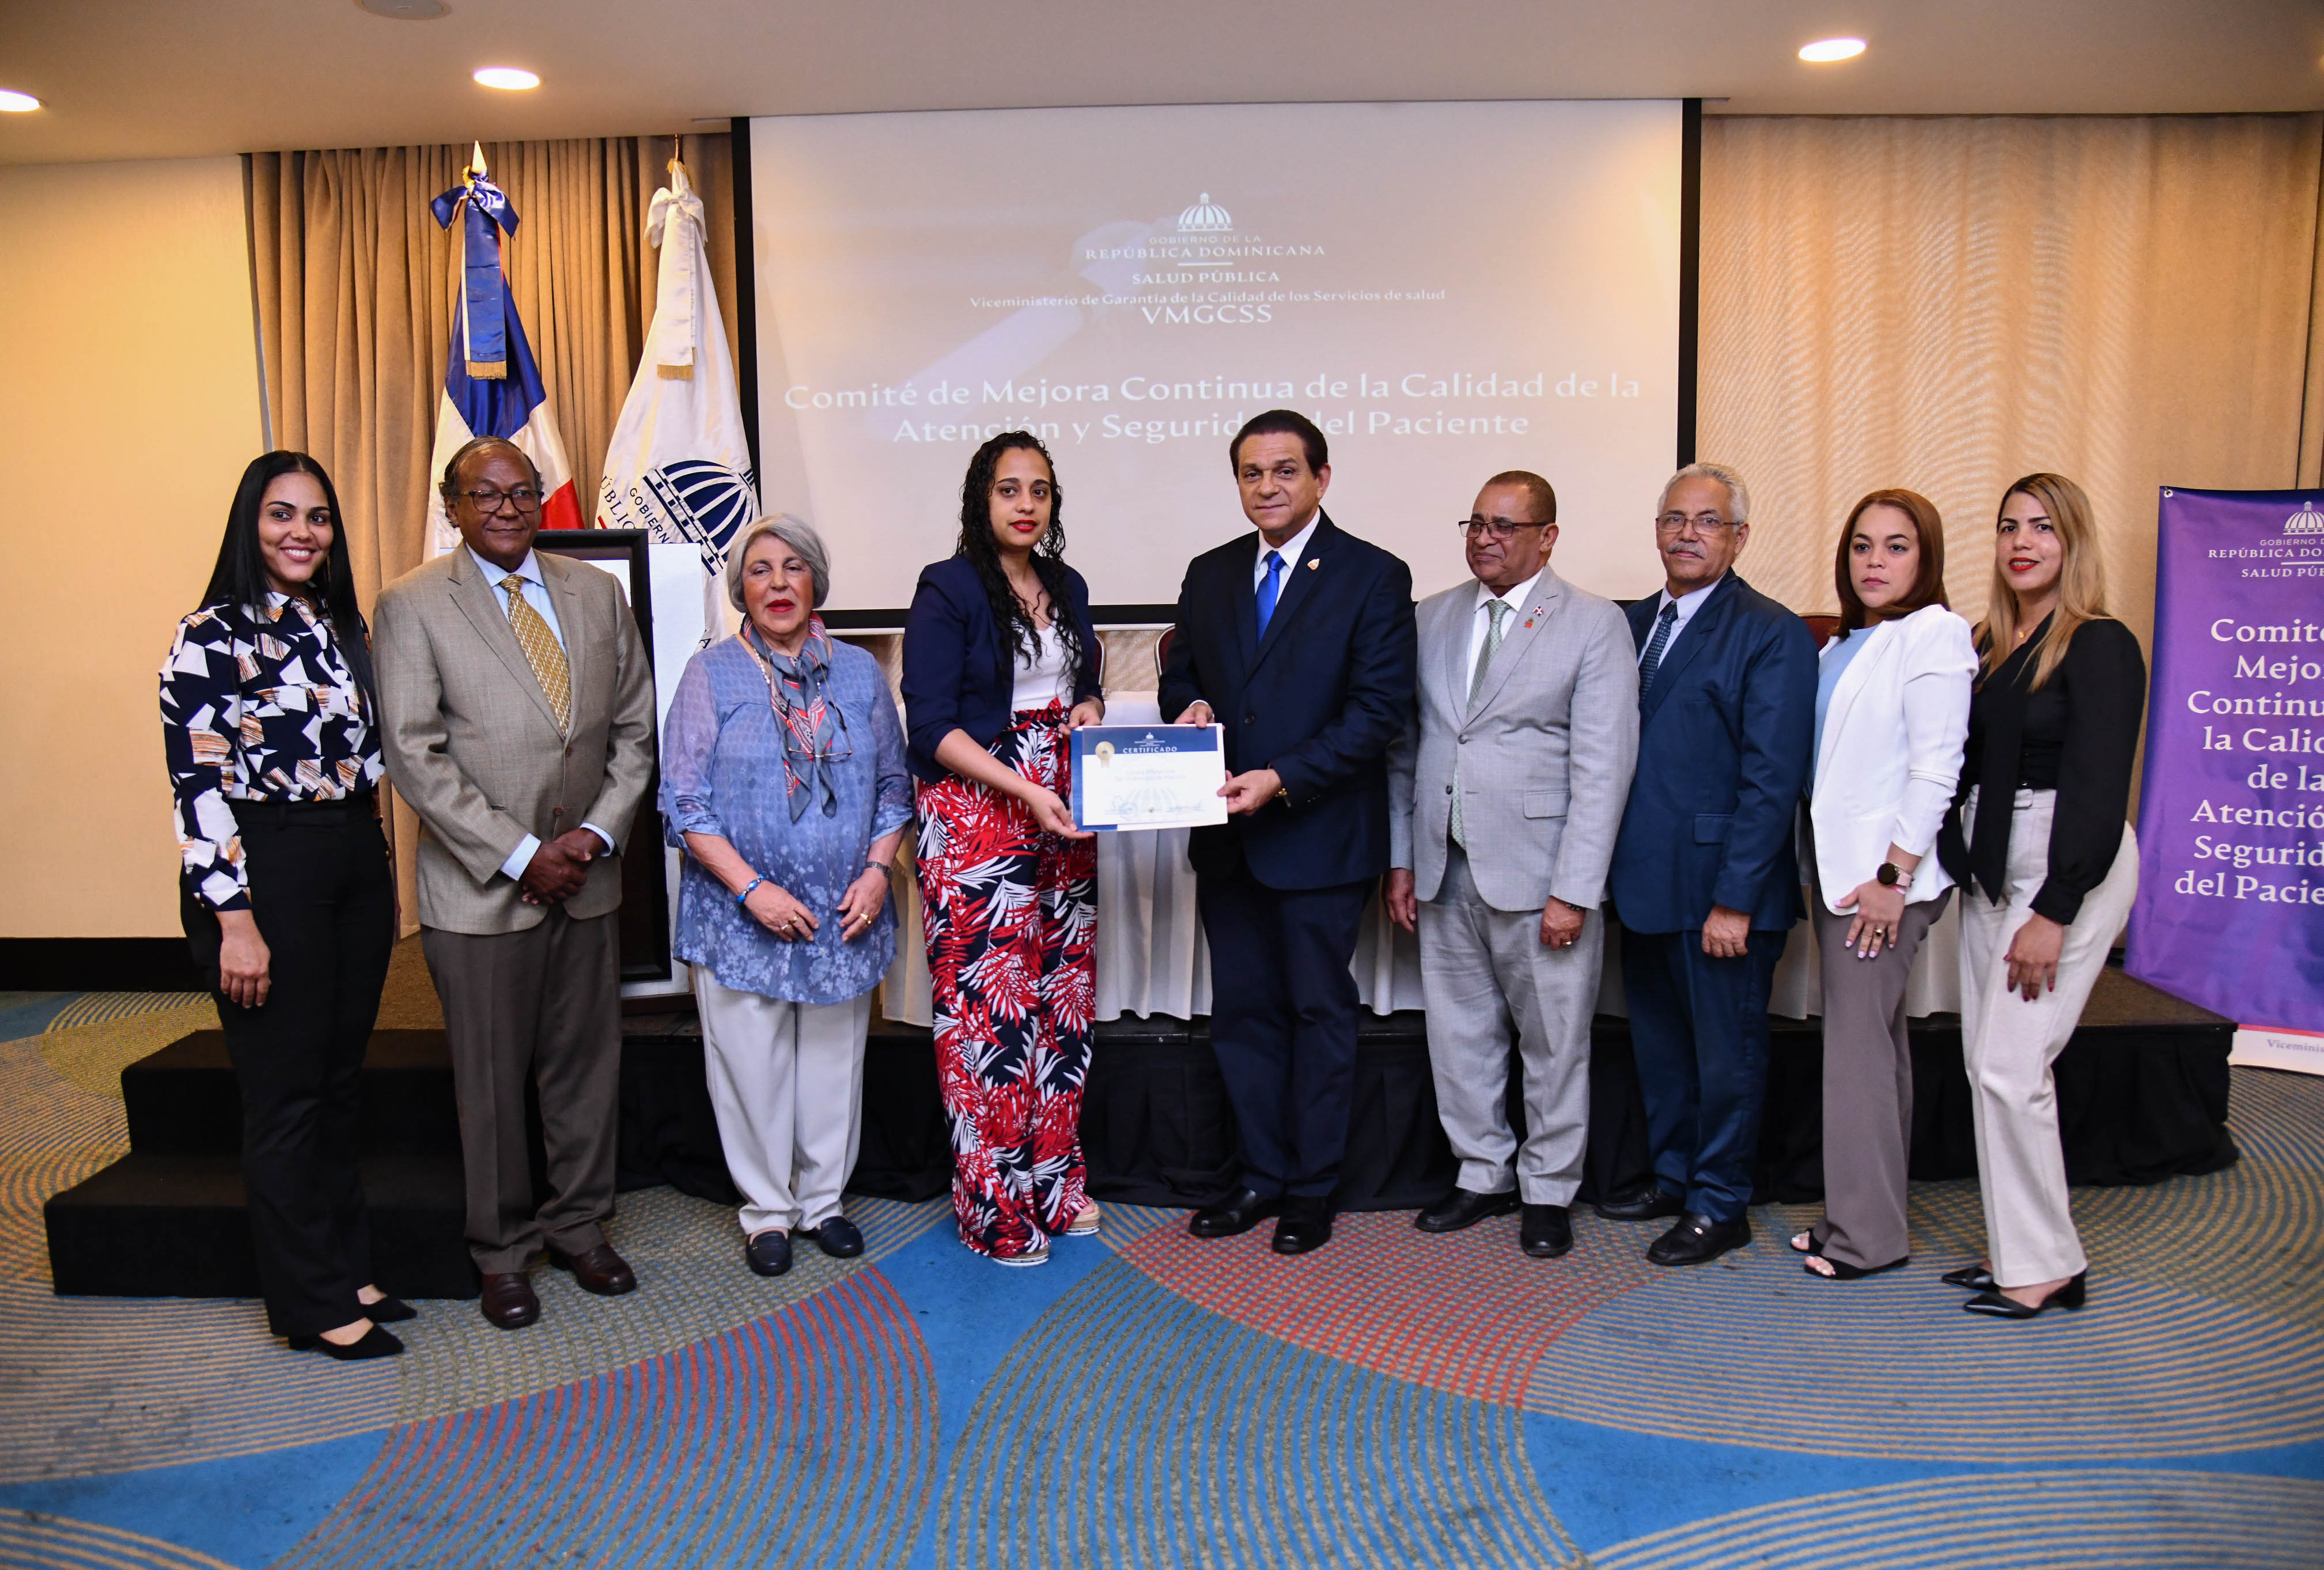 REPÚBLICA DOMINICANA: MISPAS juramenta Comité de Mejora Continua de la Calidad de la Atención y Seguridad del Paciente